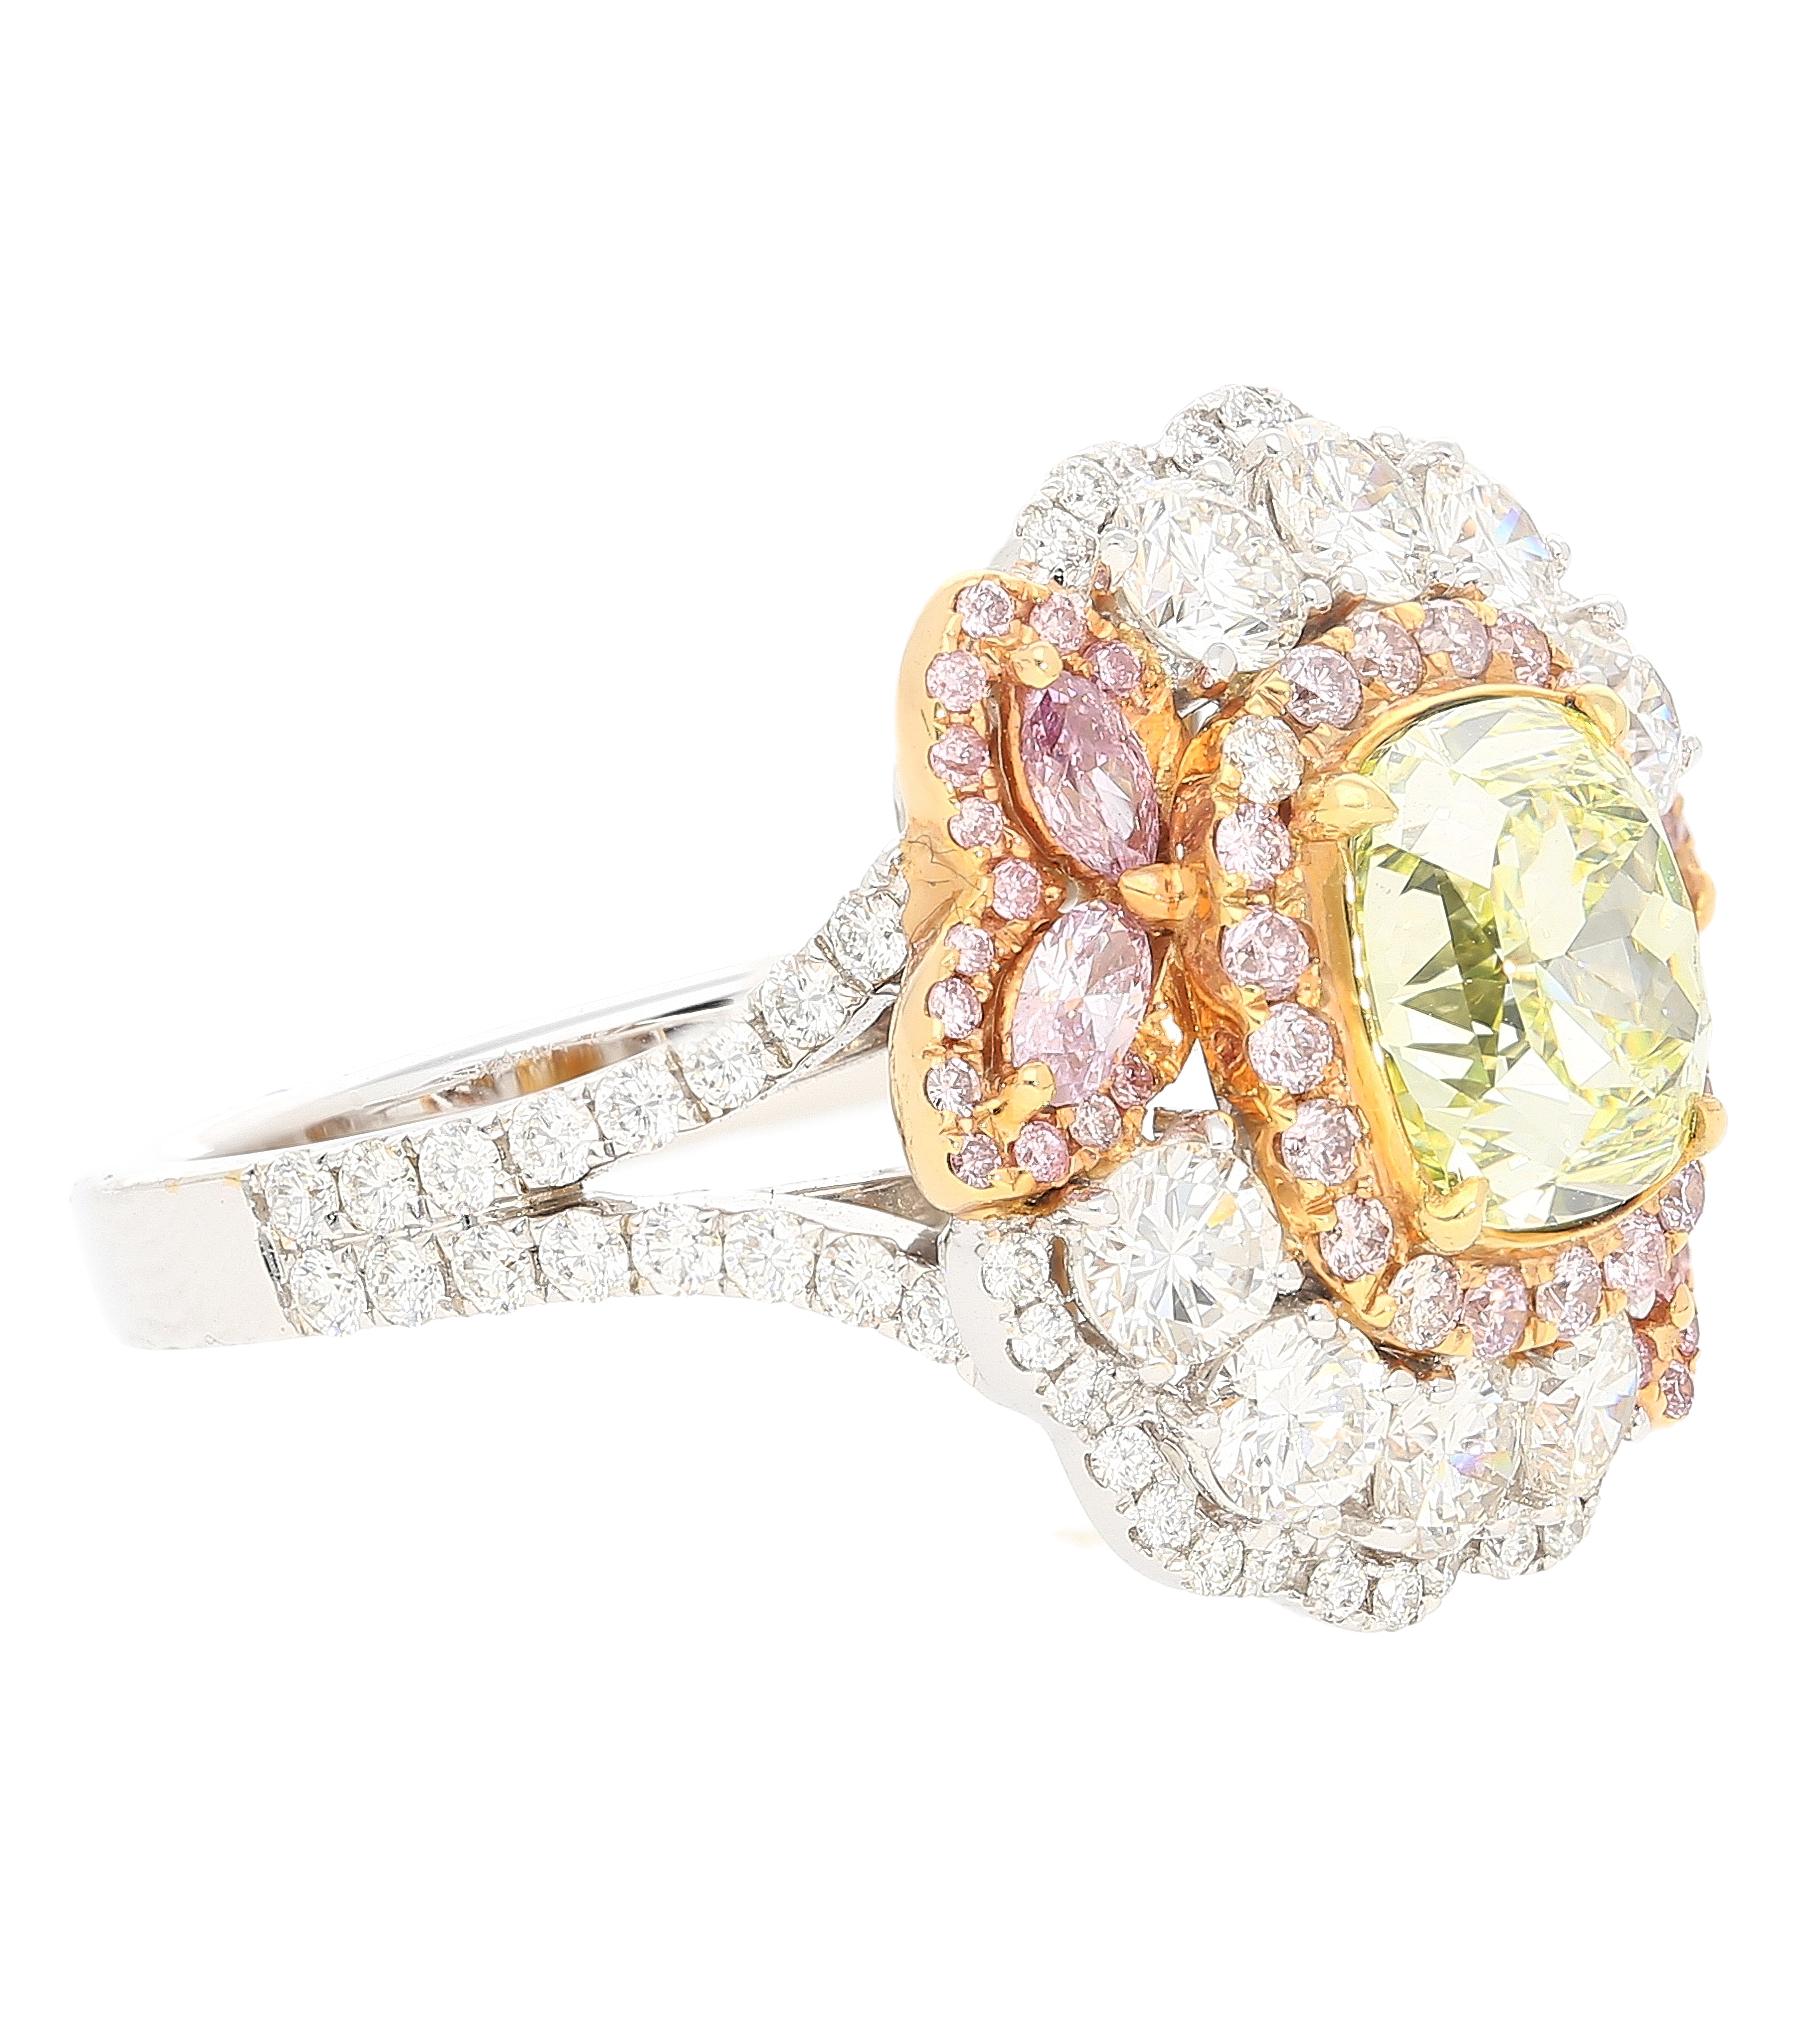 Bague en diamant certifié GIA de 2,02 carats, taille coussin, de couleur jaune verdâtre. Serti d'un ensemble coloré de diamants roses et blancs de taille mixte. Cette bague brille par la qualité de ses diamants naturels provenant du monde entier.